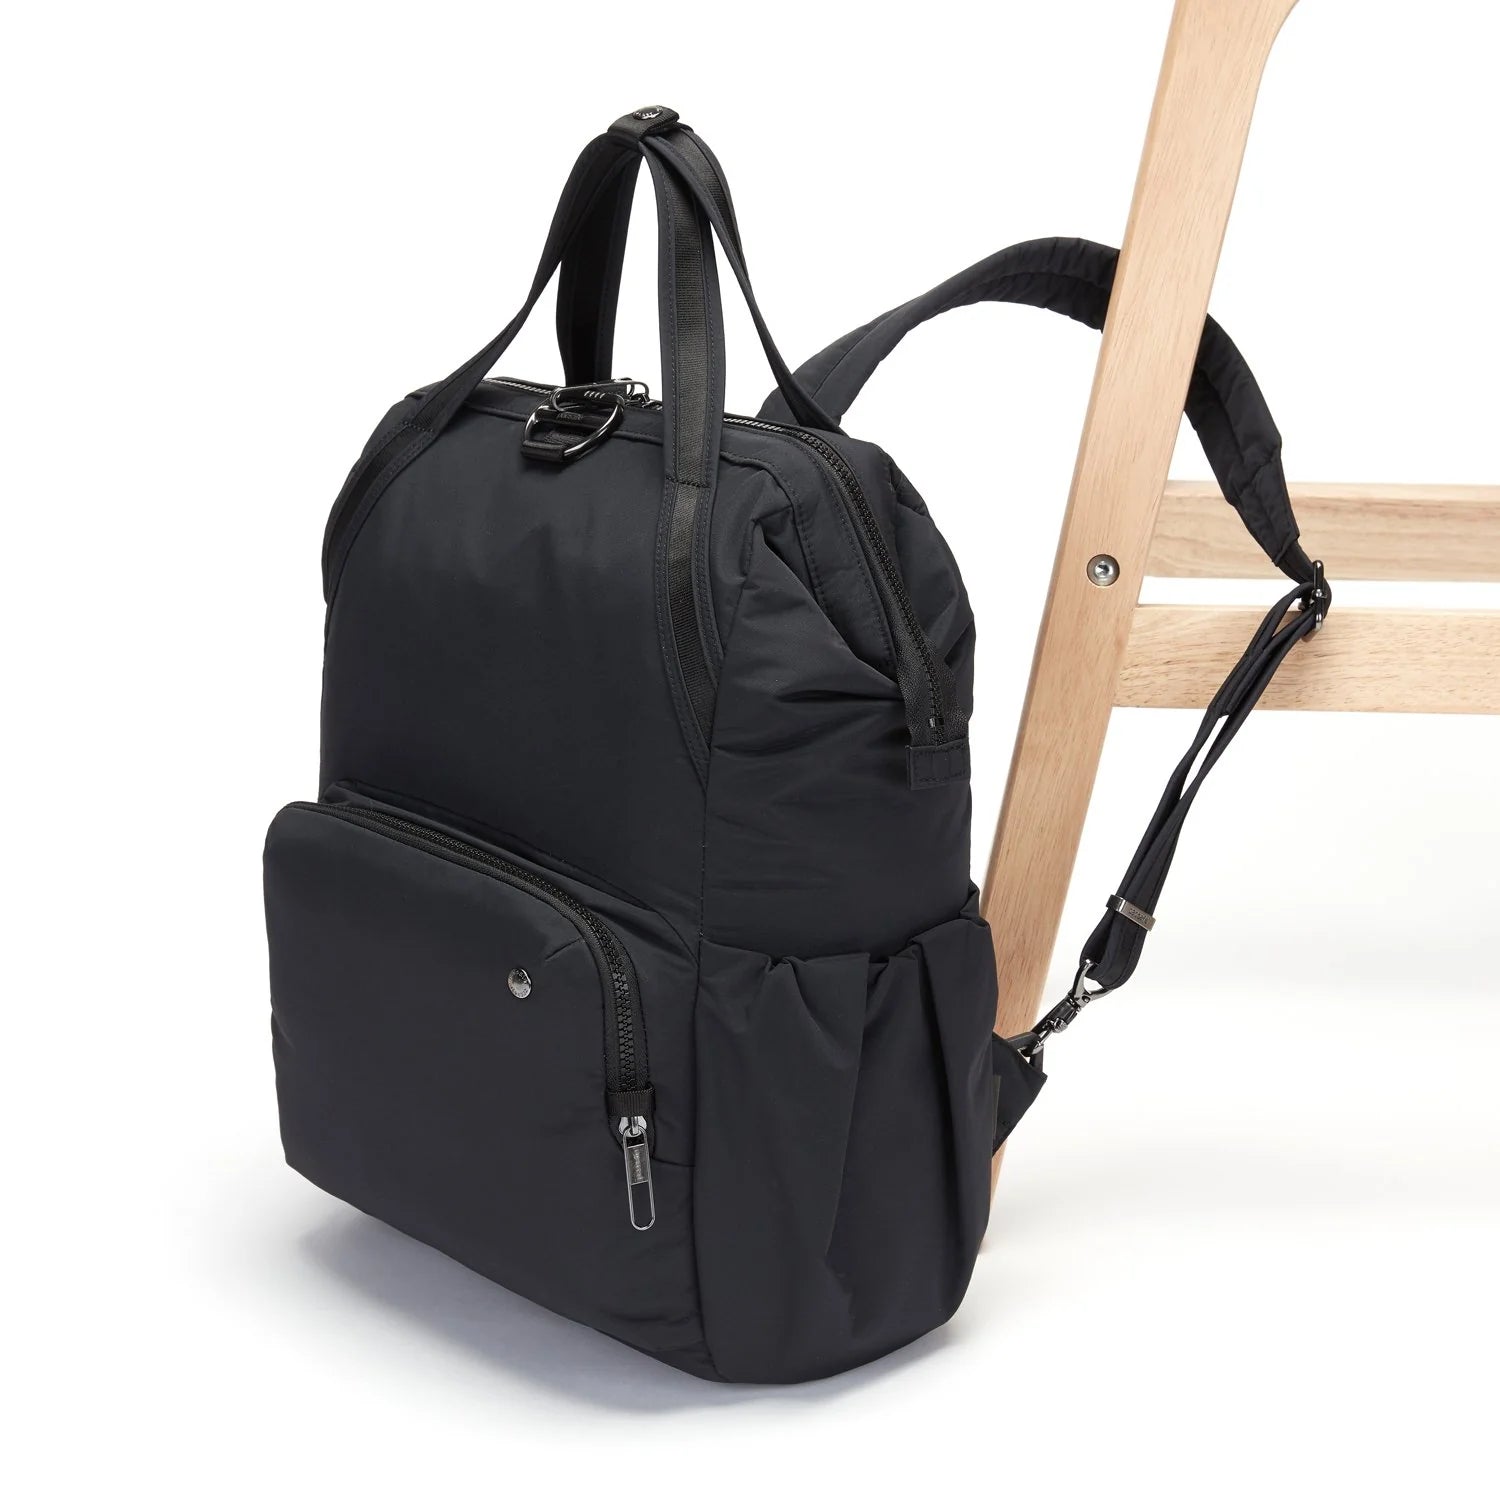 PACSAFE CITYSAFE CX BACKPACK ECONYL BLACK – Sydney Luggage